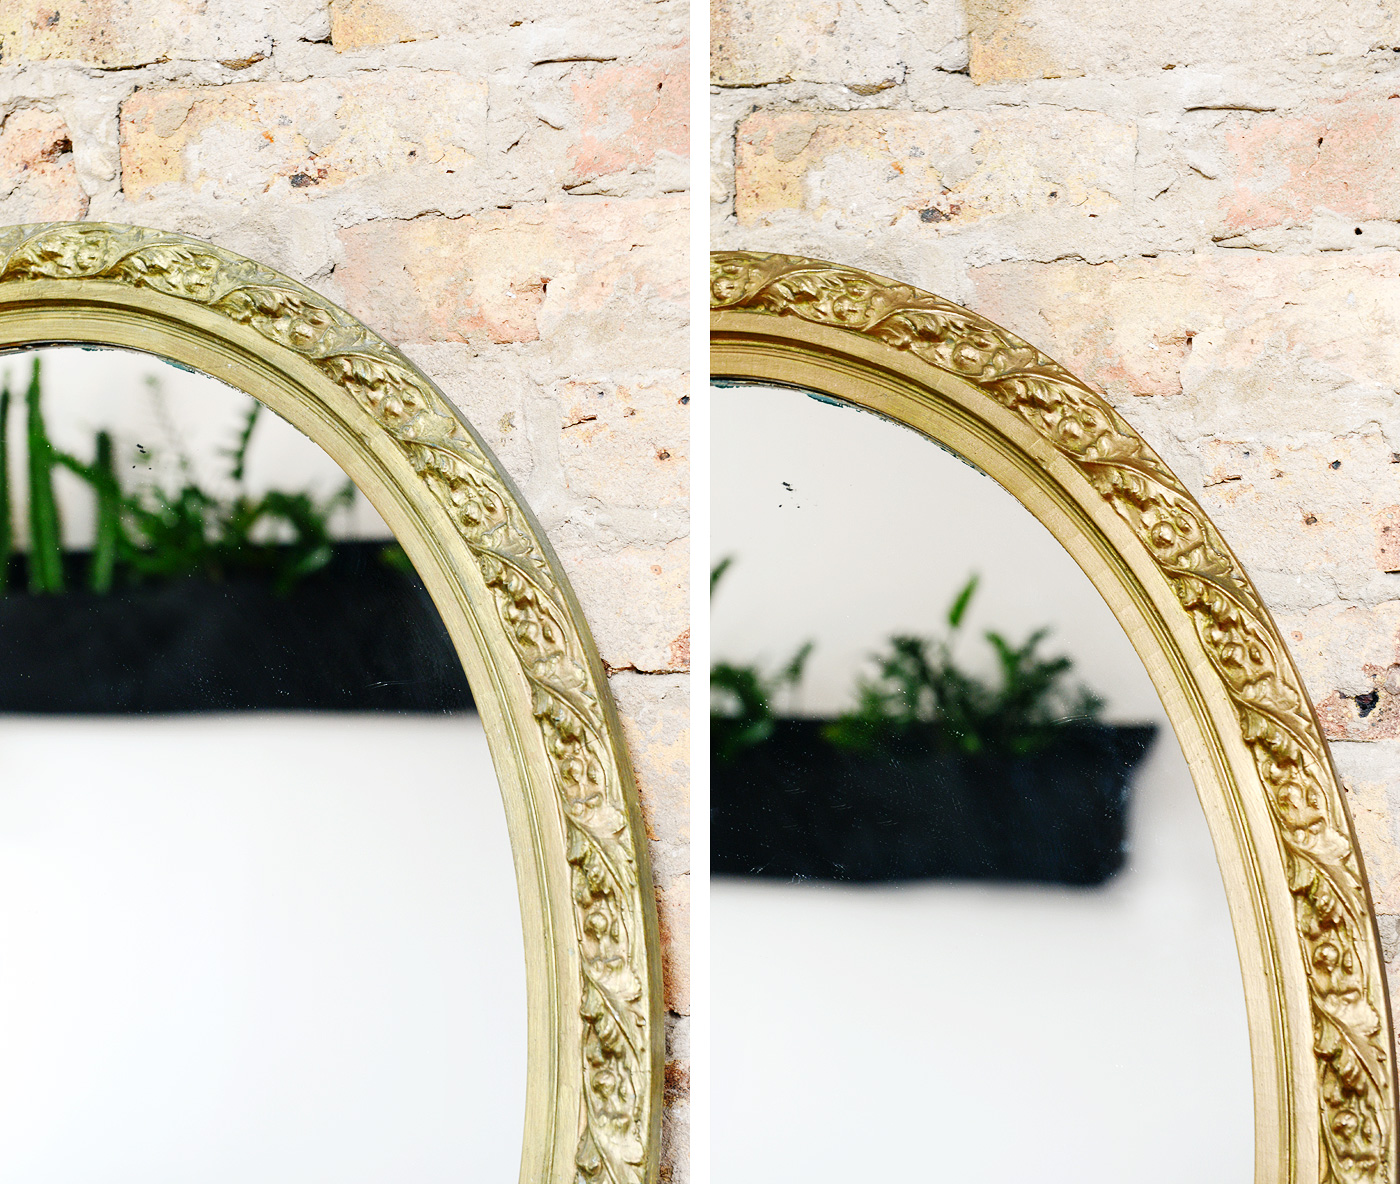 DIY: Rub 'n Buff Gold Leaf on Black Round Mirrors